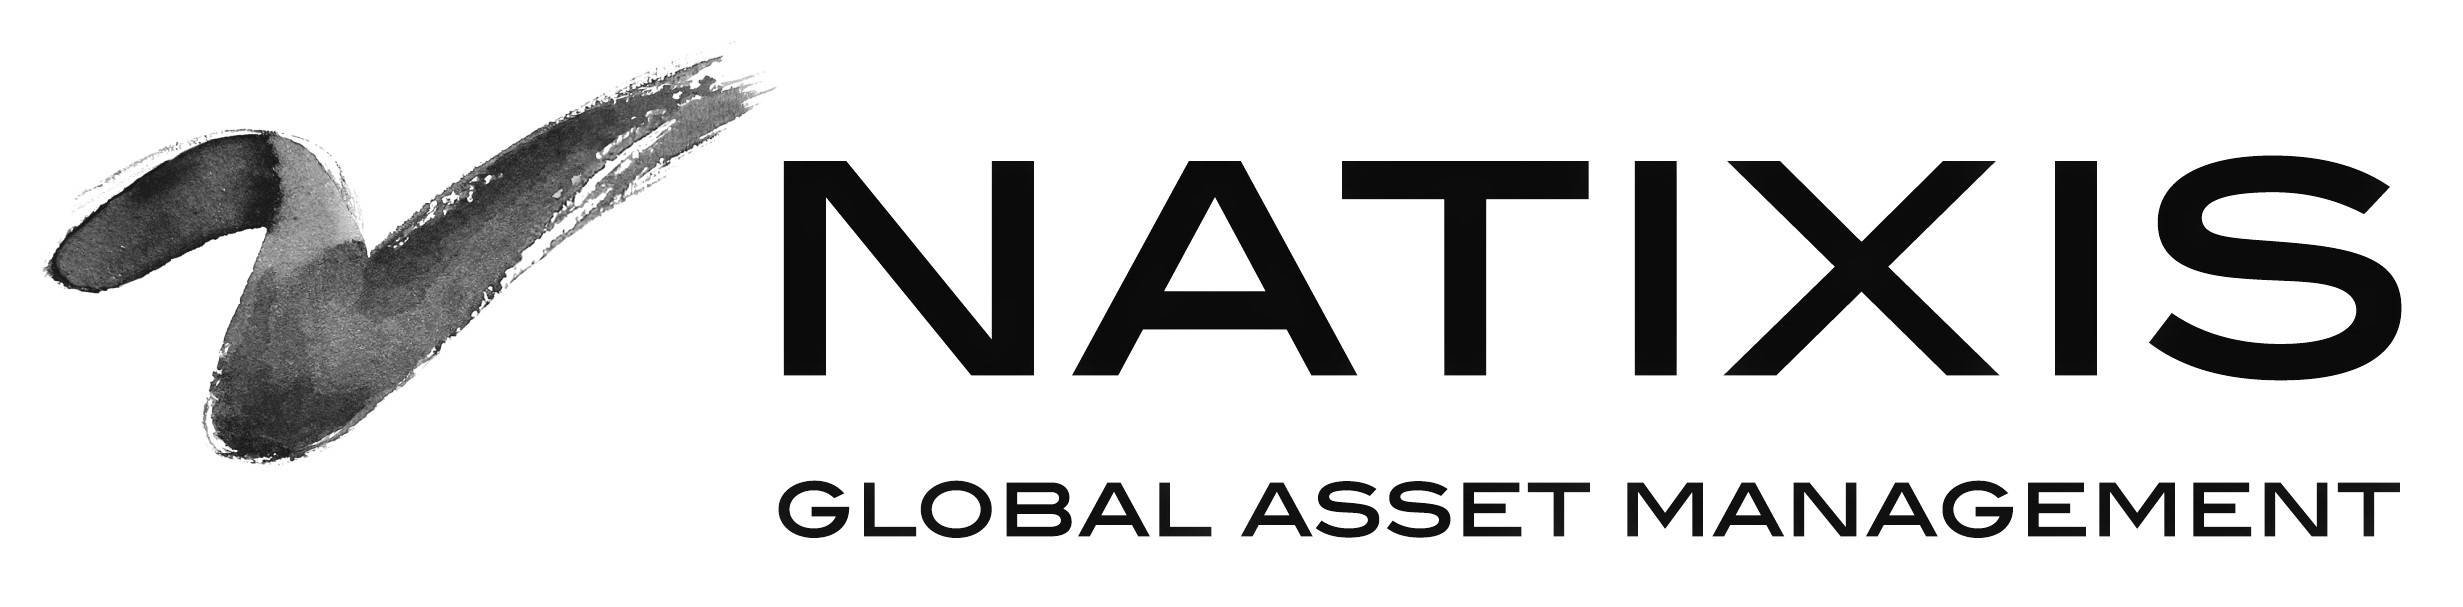 Natixis_Logo.jpg